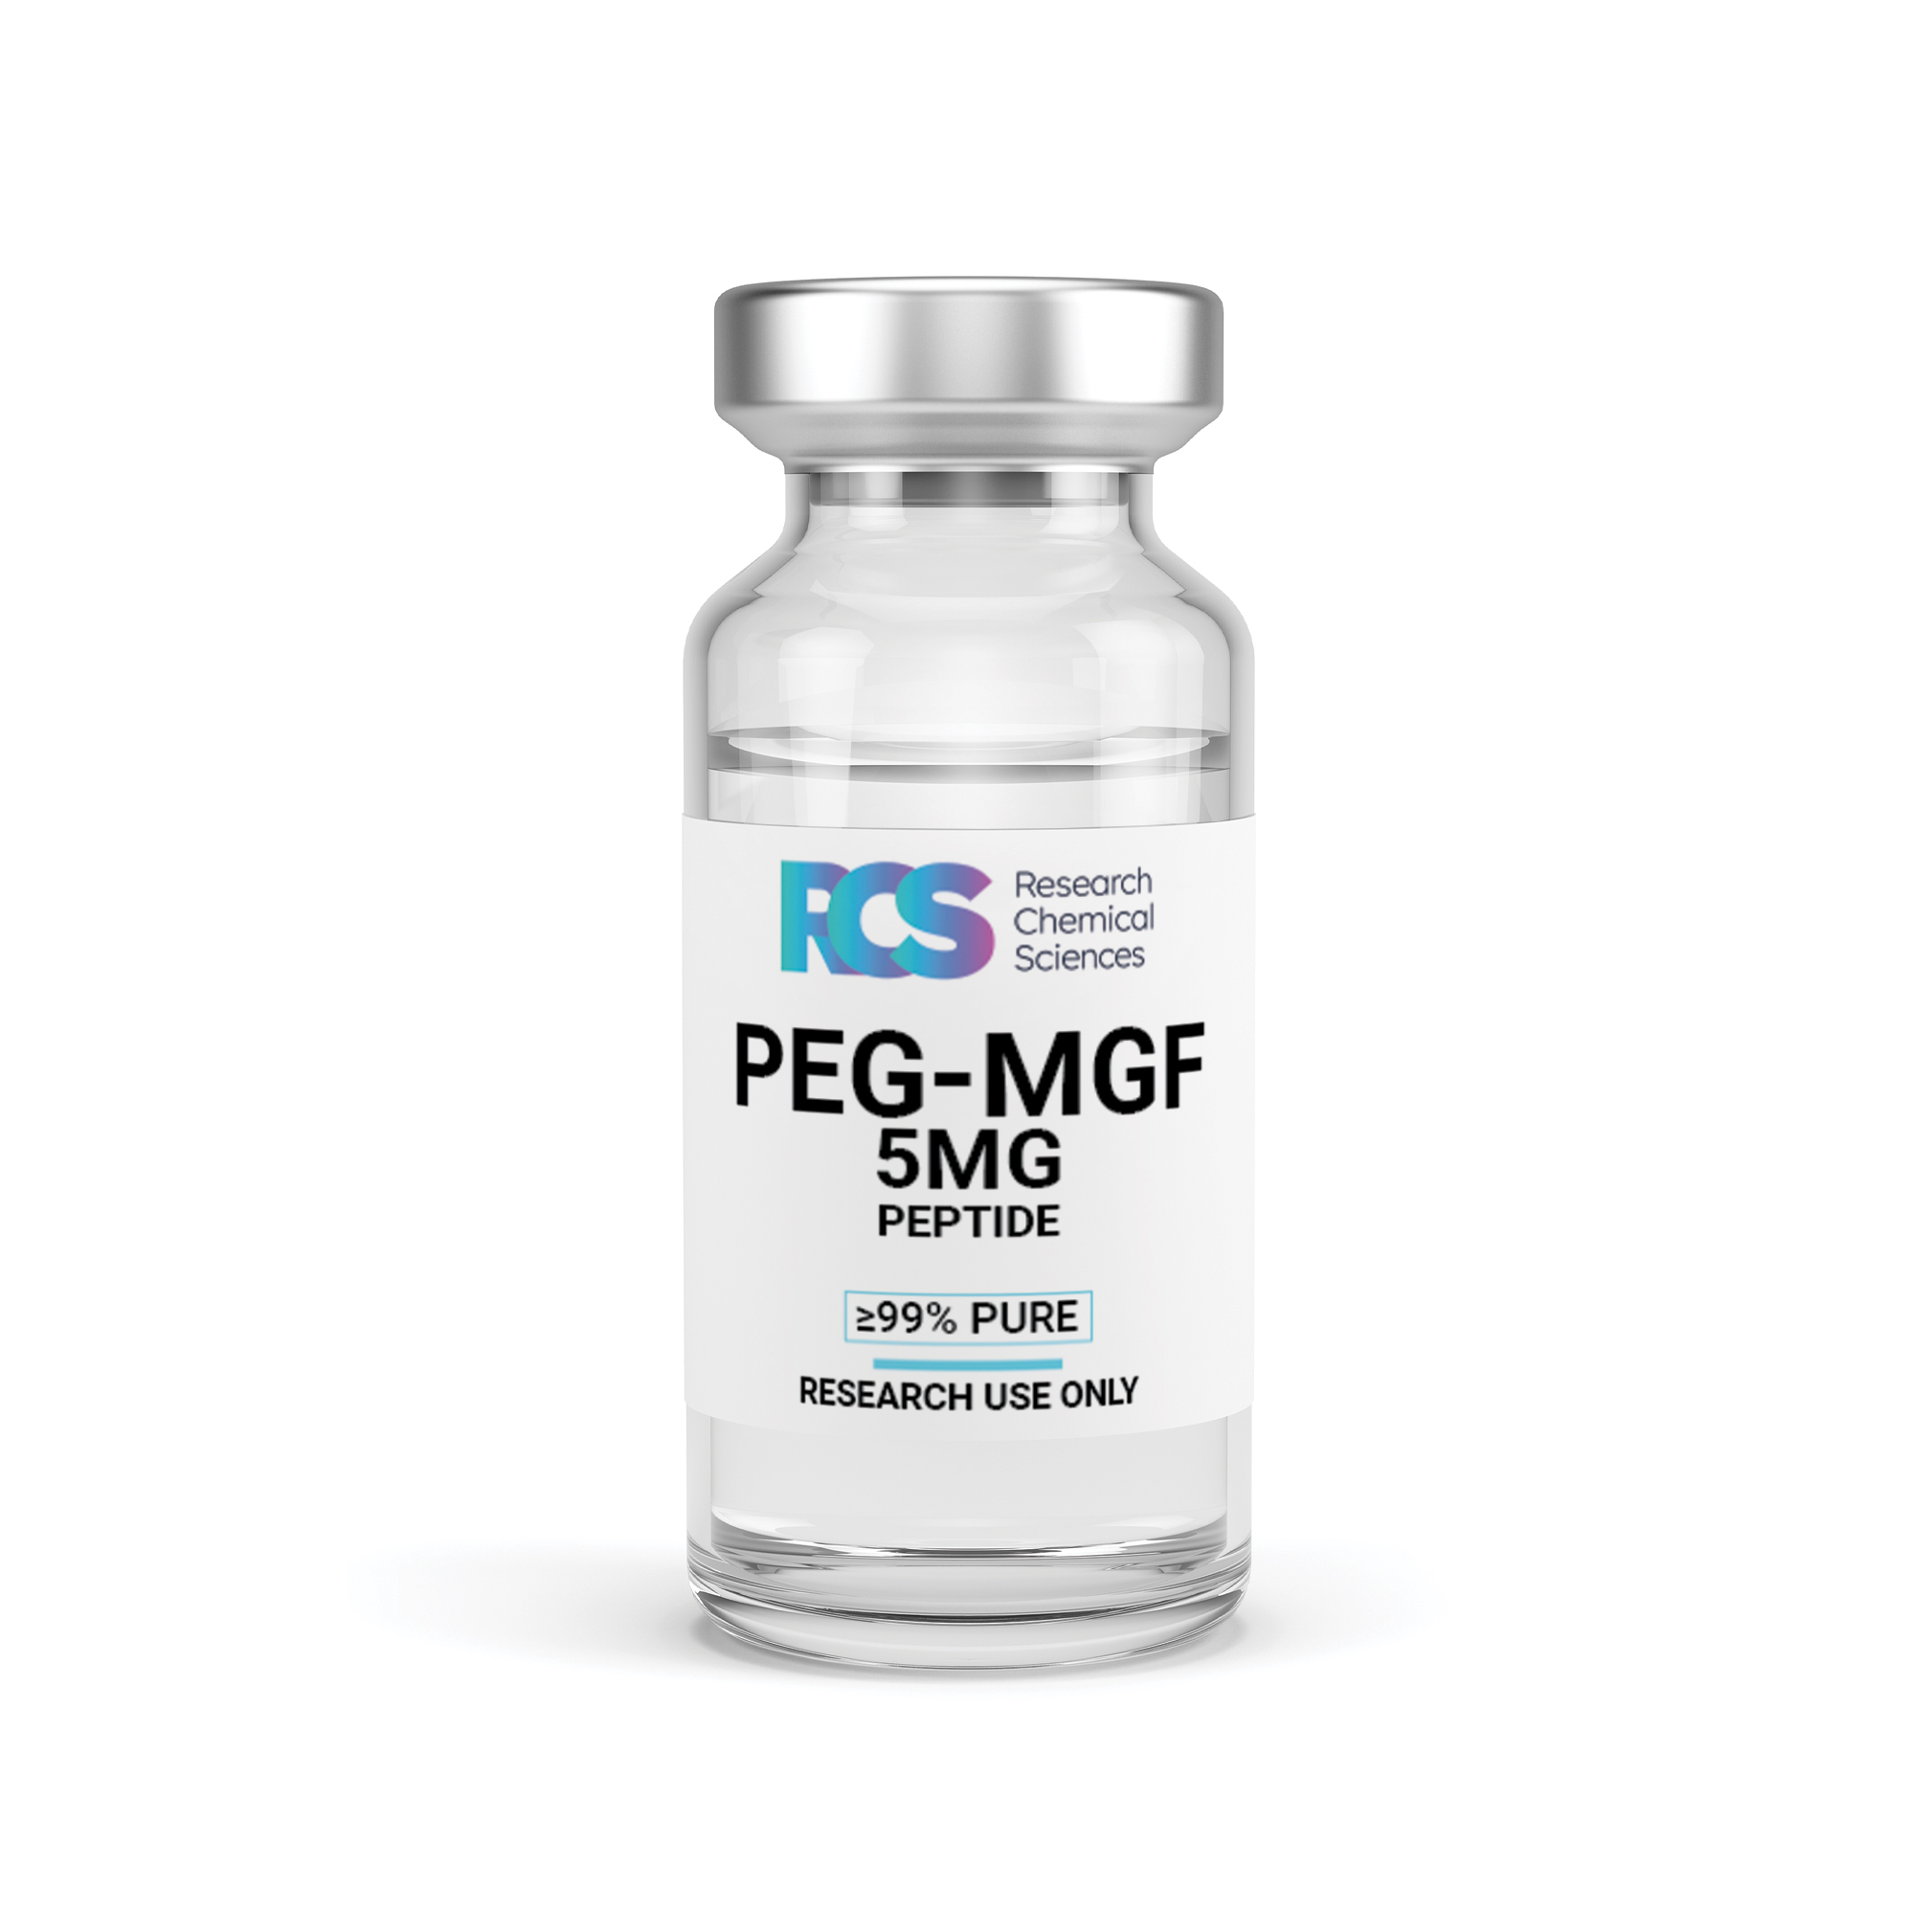 RCS-PEGMGF-Peptide-5MG-Side-1